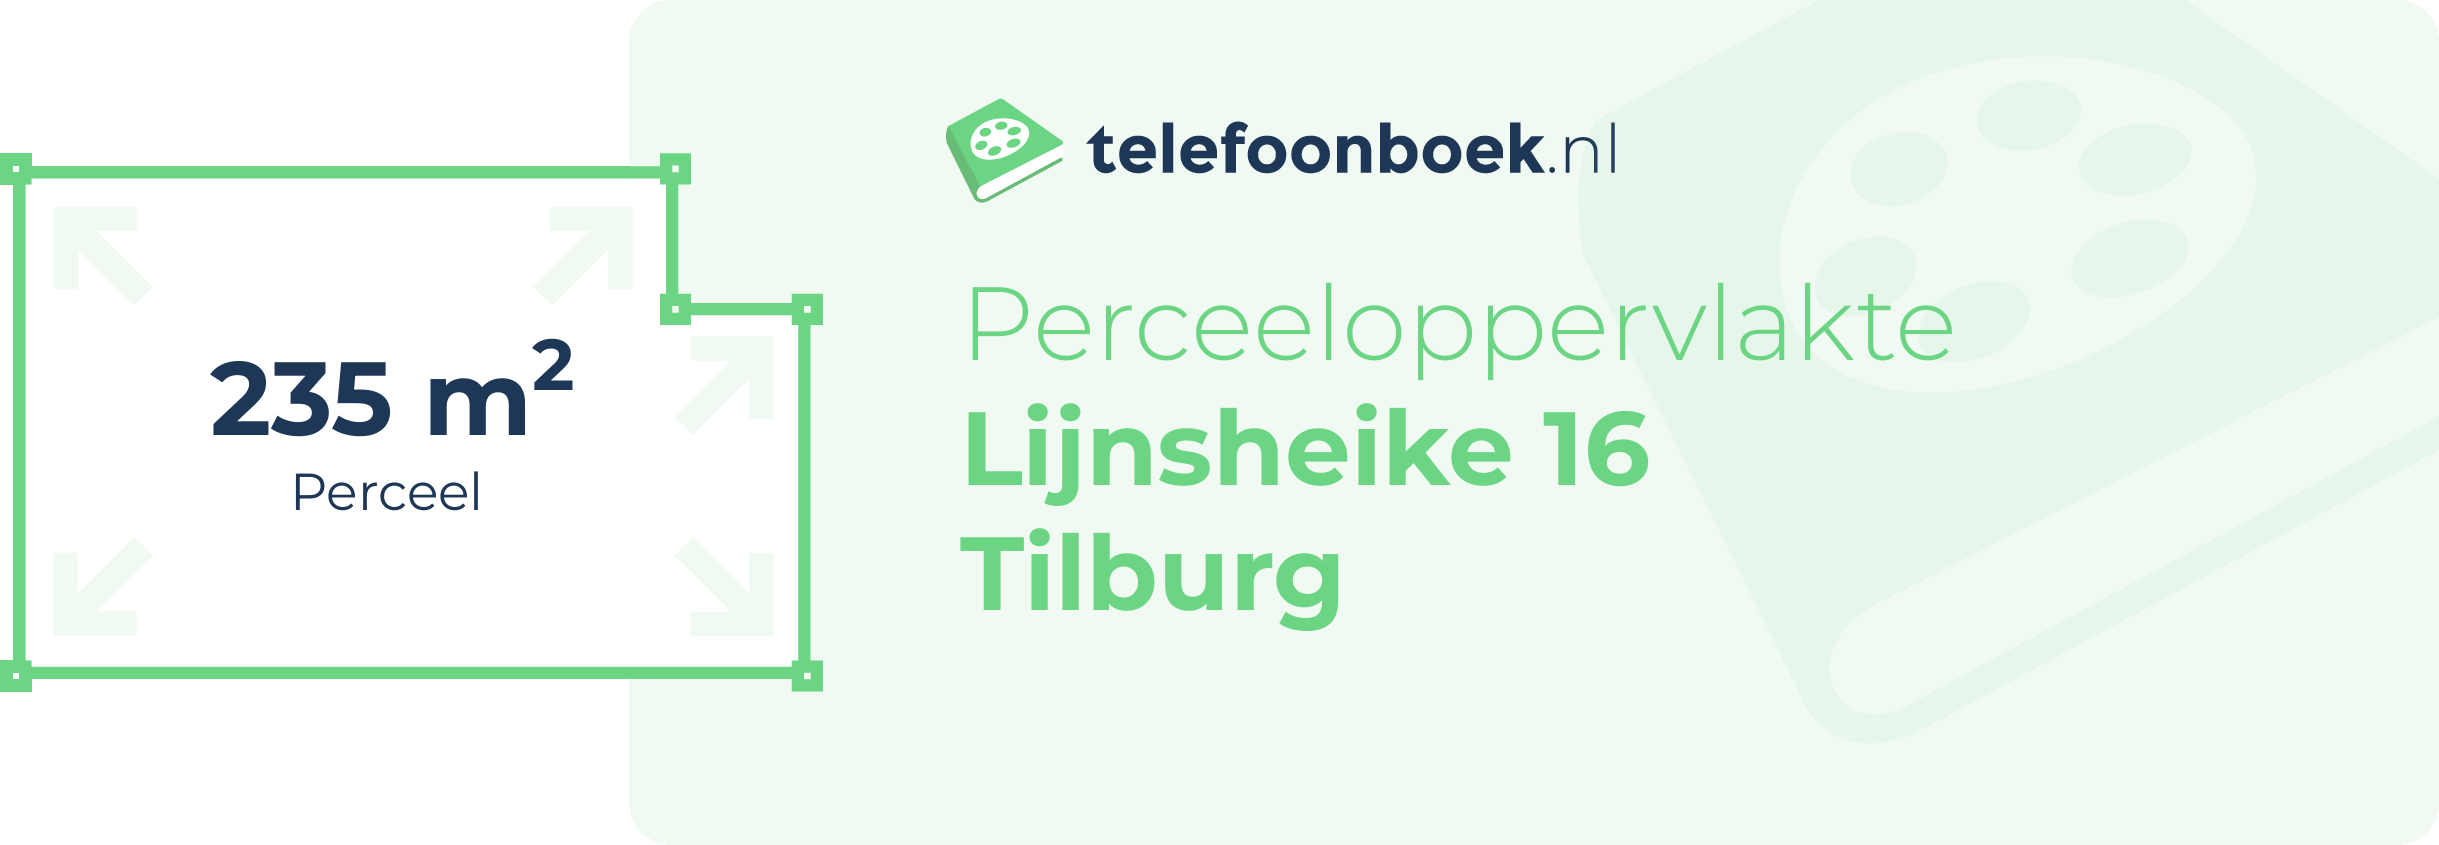 Perceeloppervlakte Lijnsheike 16 Tilburg